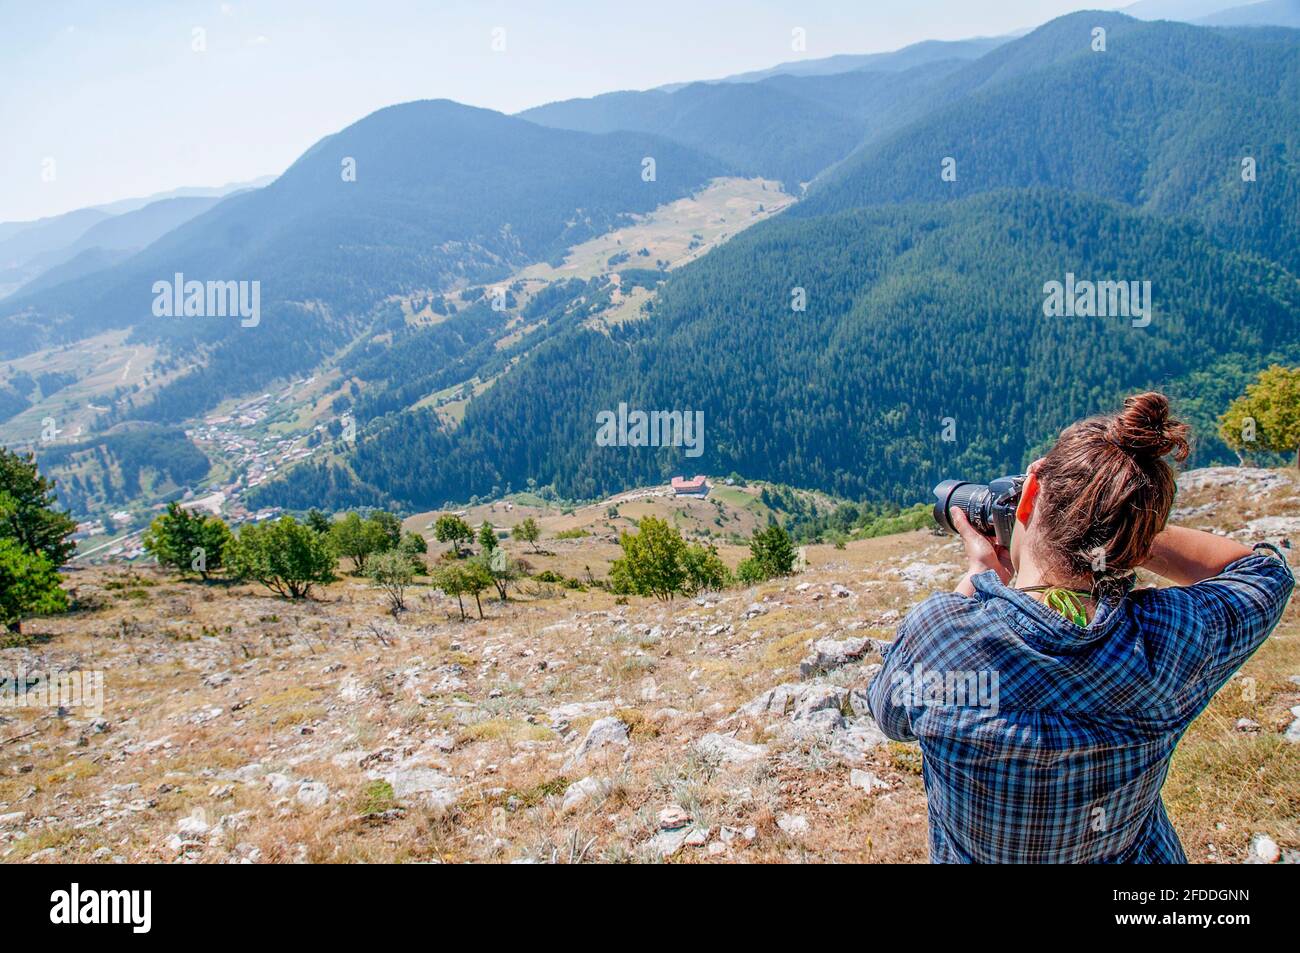 Una giovane donna che scatta una foto su una montagna. Stile di vita blogging / vlogging su vita sana, natura e all'aperto. Foto Stock